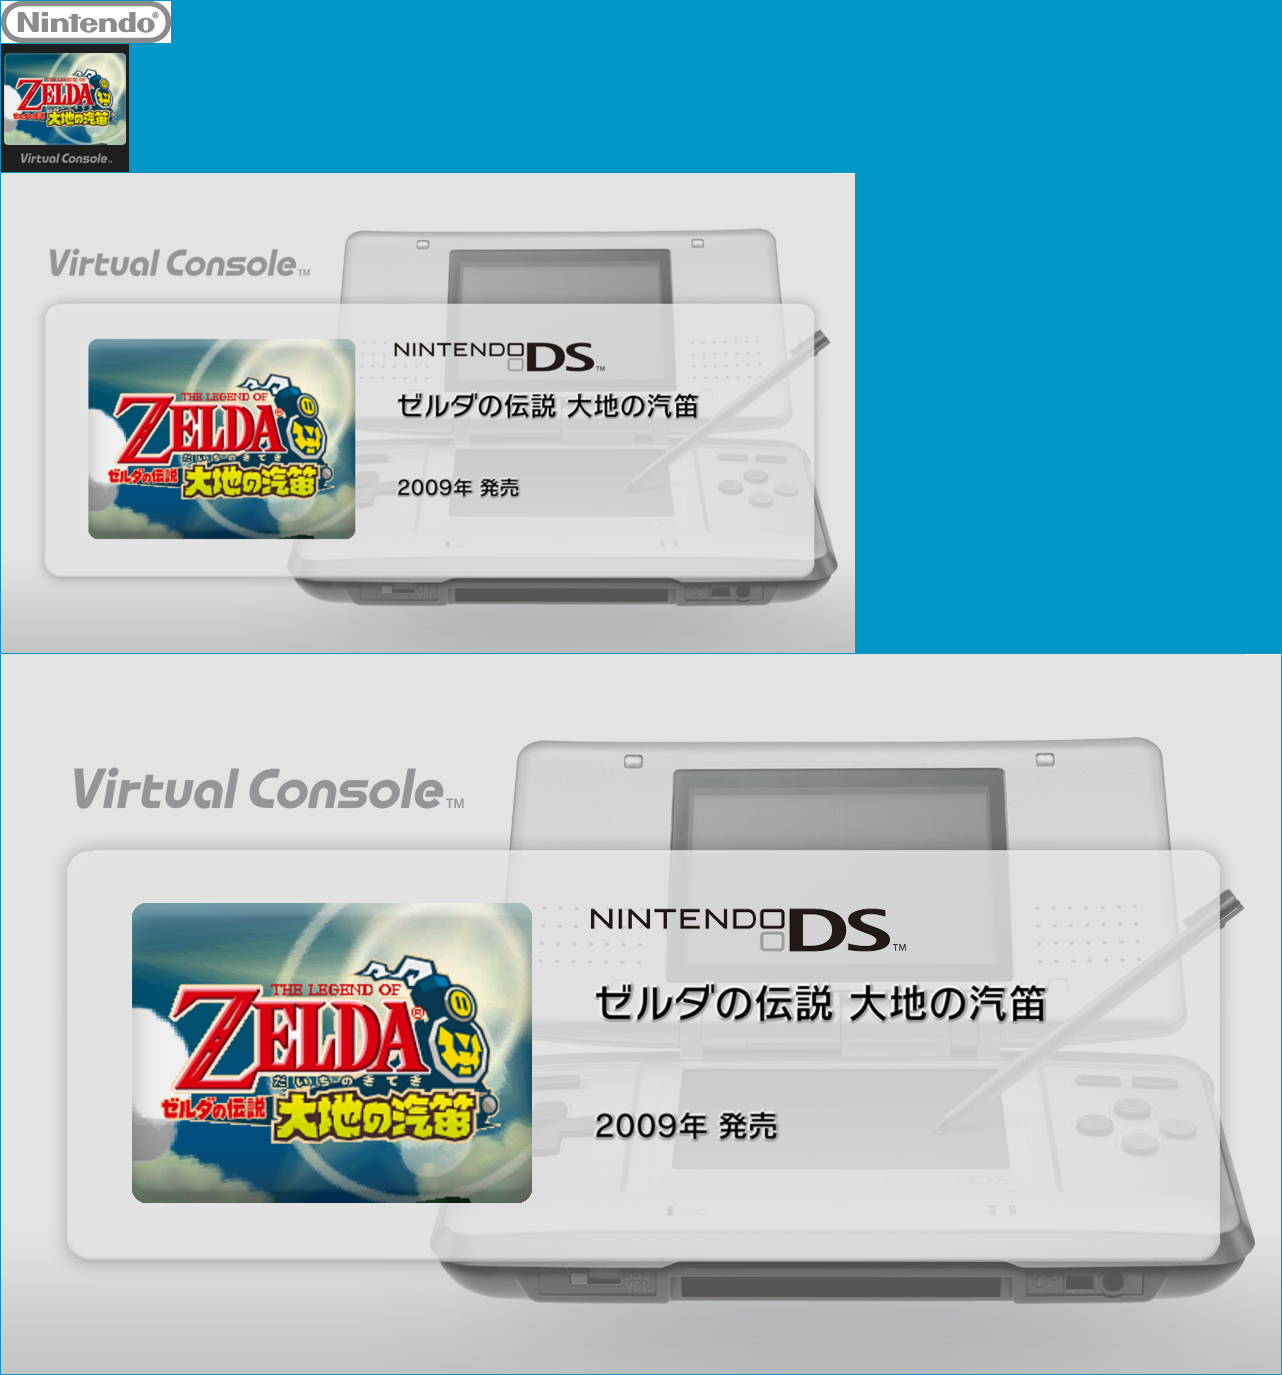 Virtual Console - Zelda no Densetsu: Daichi no Kiteki